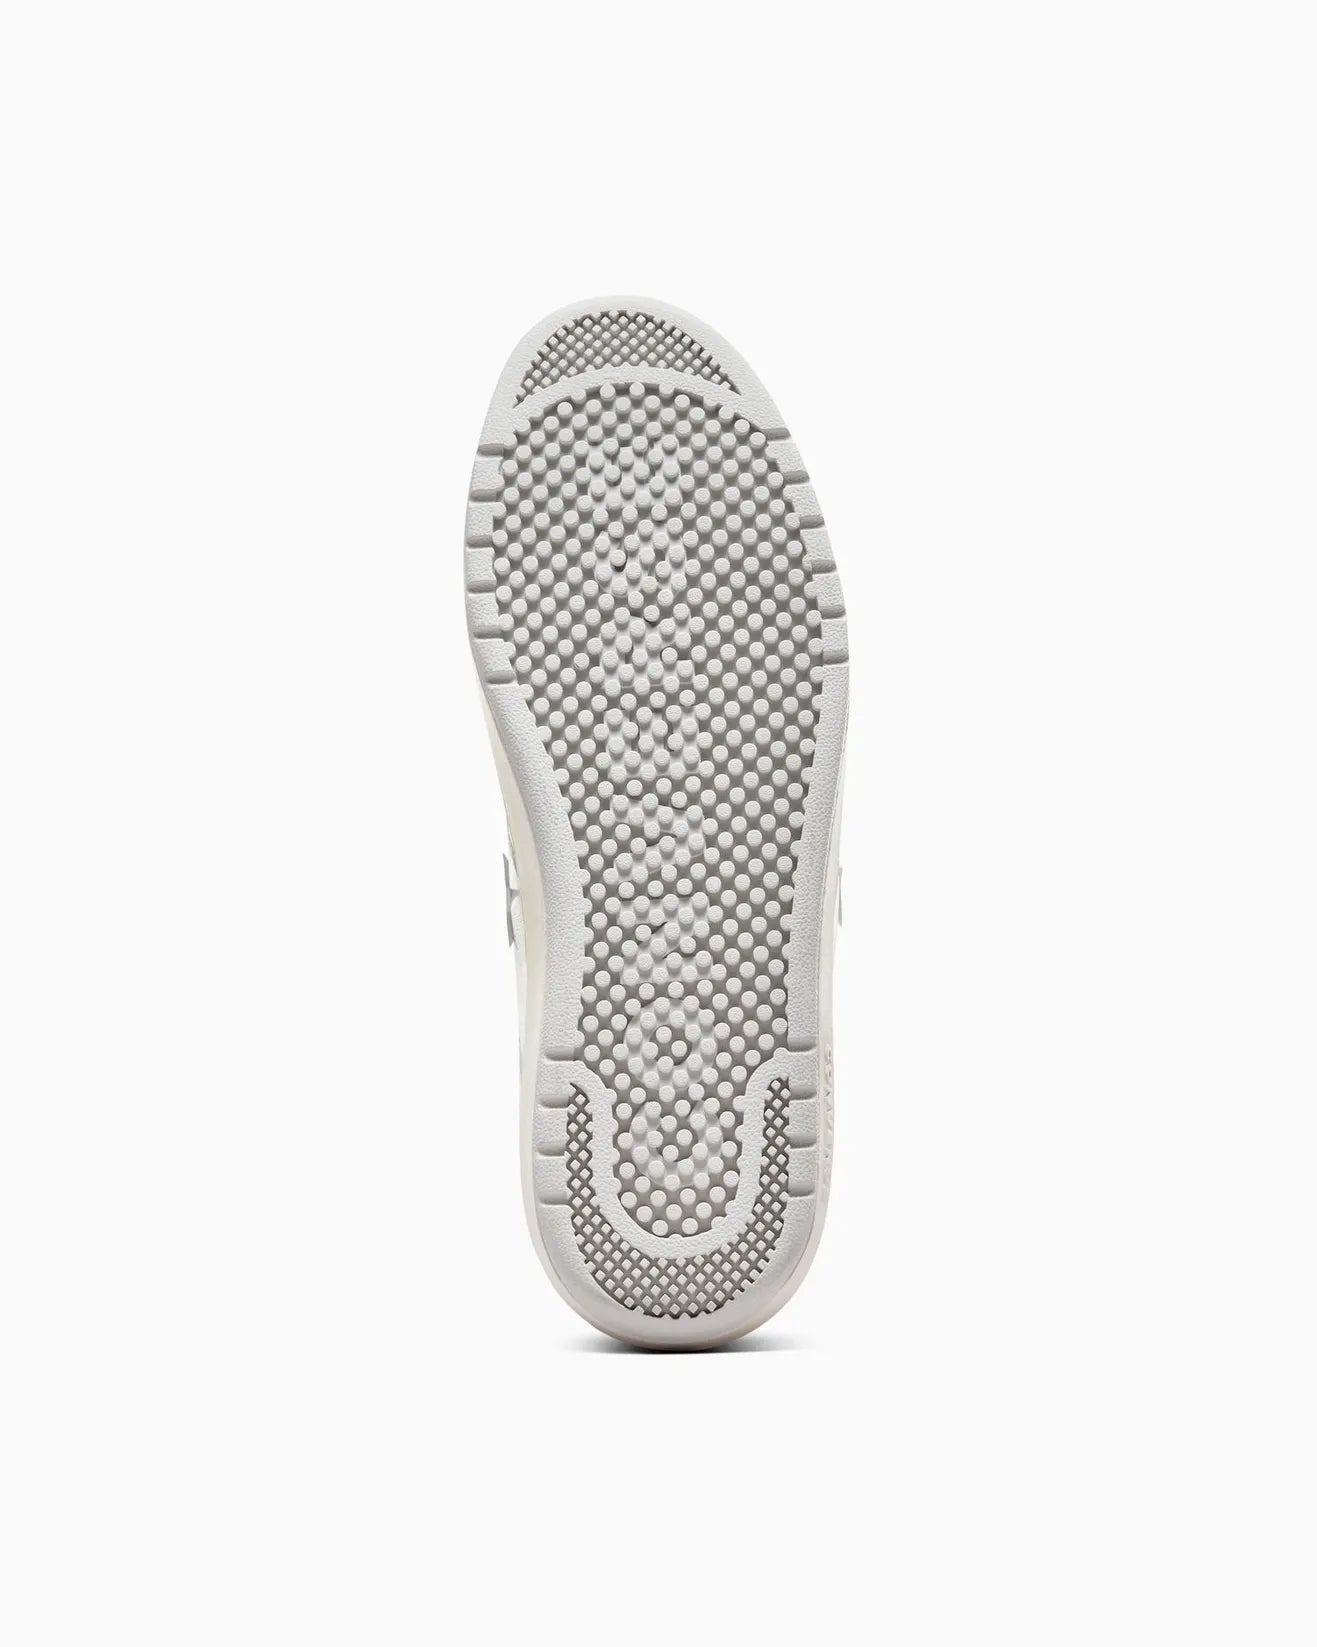 CONVERSE Pro Blaze Classic Low Shoe - White/Fossilized/Egret